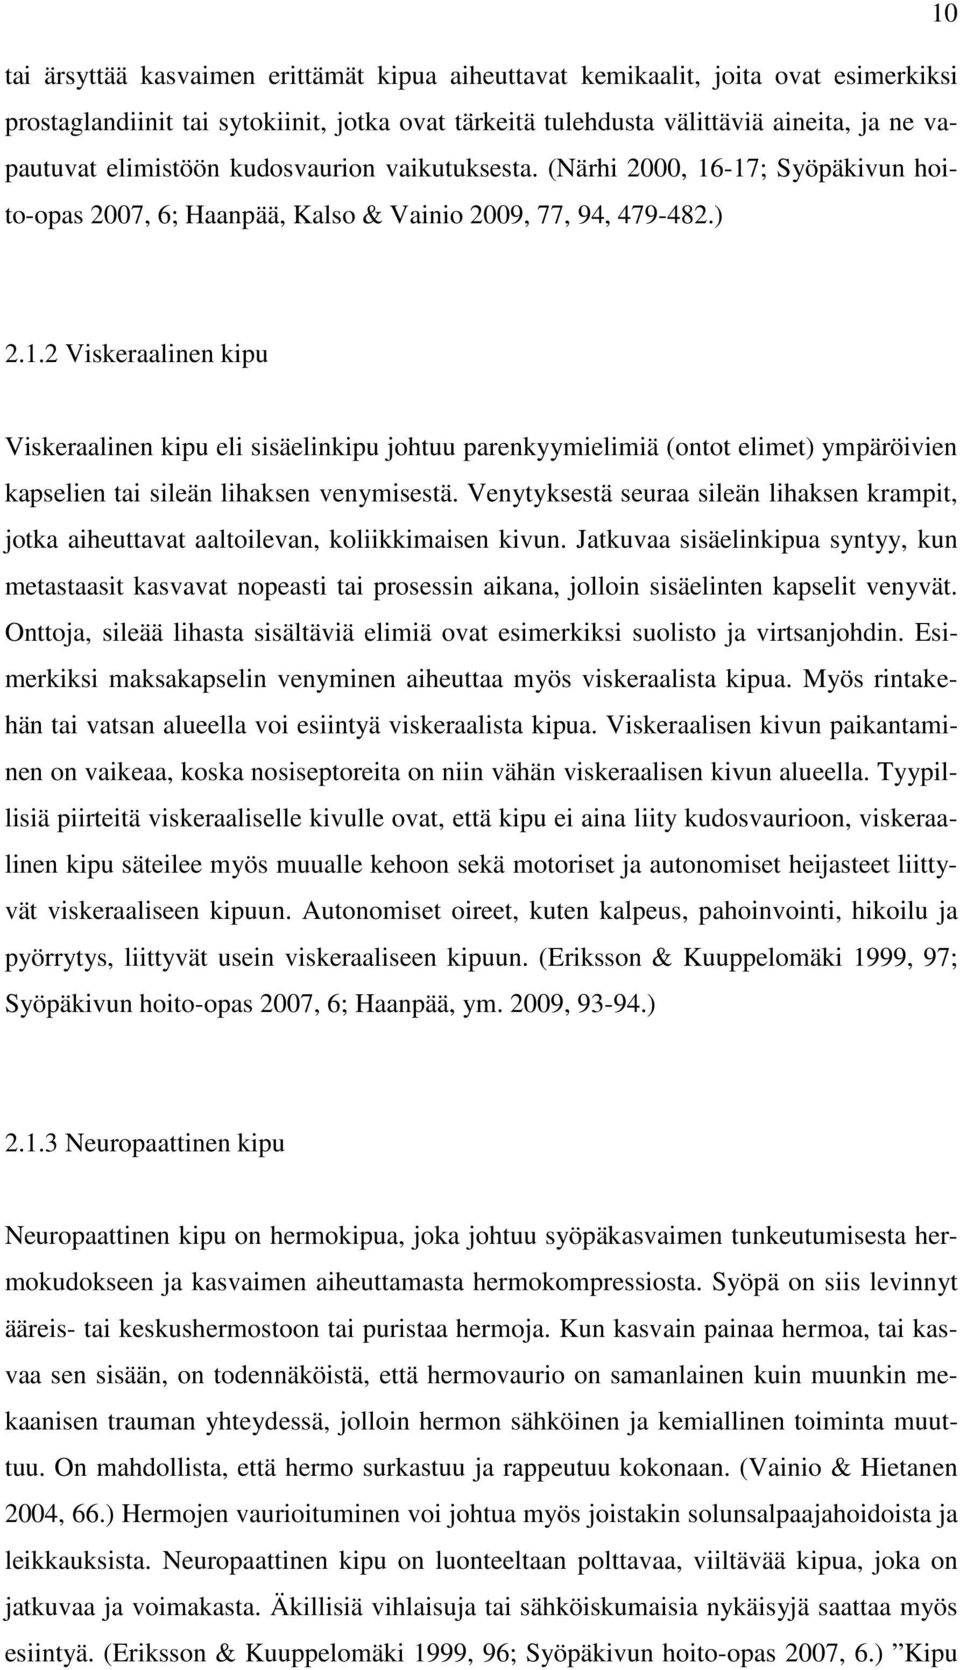 -17; Syöpäkivun hoito-opas 2007, 6; Haanpää, Kalso & Vainio 2009, 77, 94, 479-482.) 2.1.2 Viskeraalinen kipu Viskeraalinen kipu eli sisäelinkipu johtuu parenkyymielimiä (ontot elimet) ympäröivien kapselien tai sileän lihaksen venymisestä.